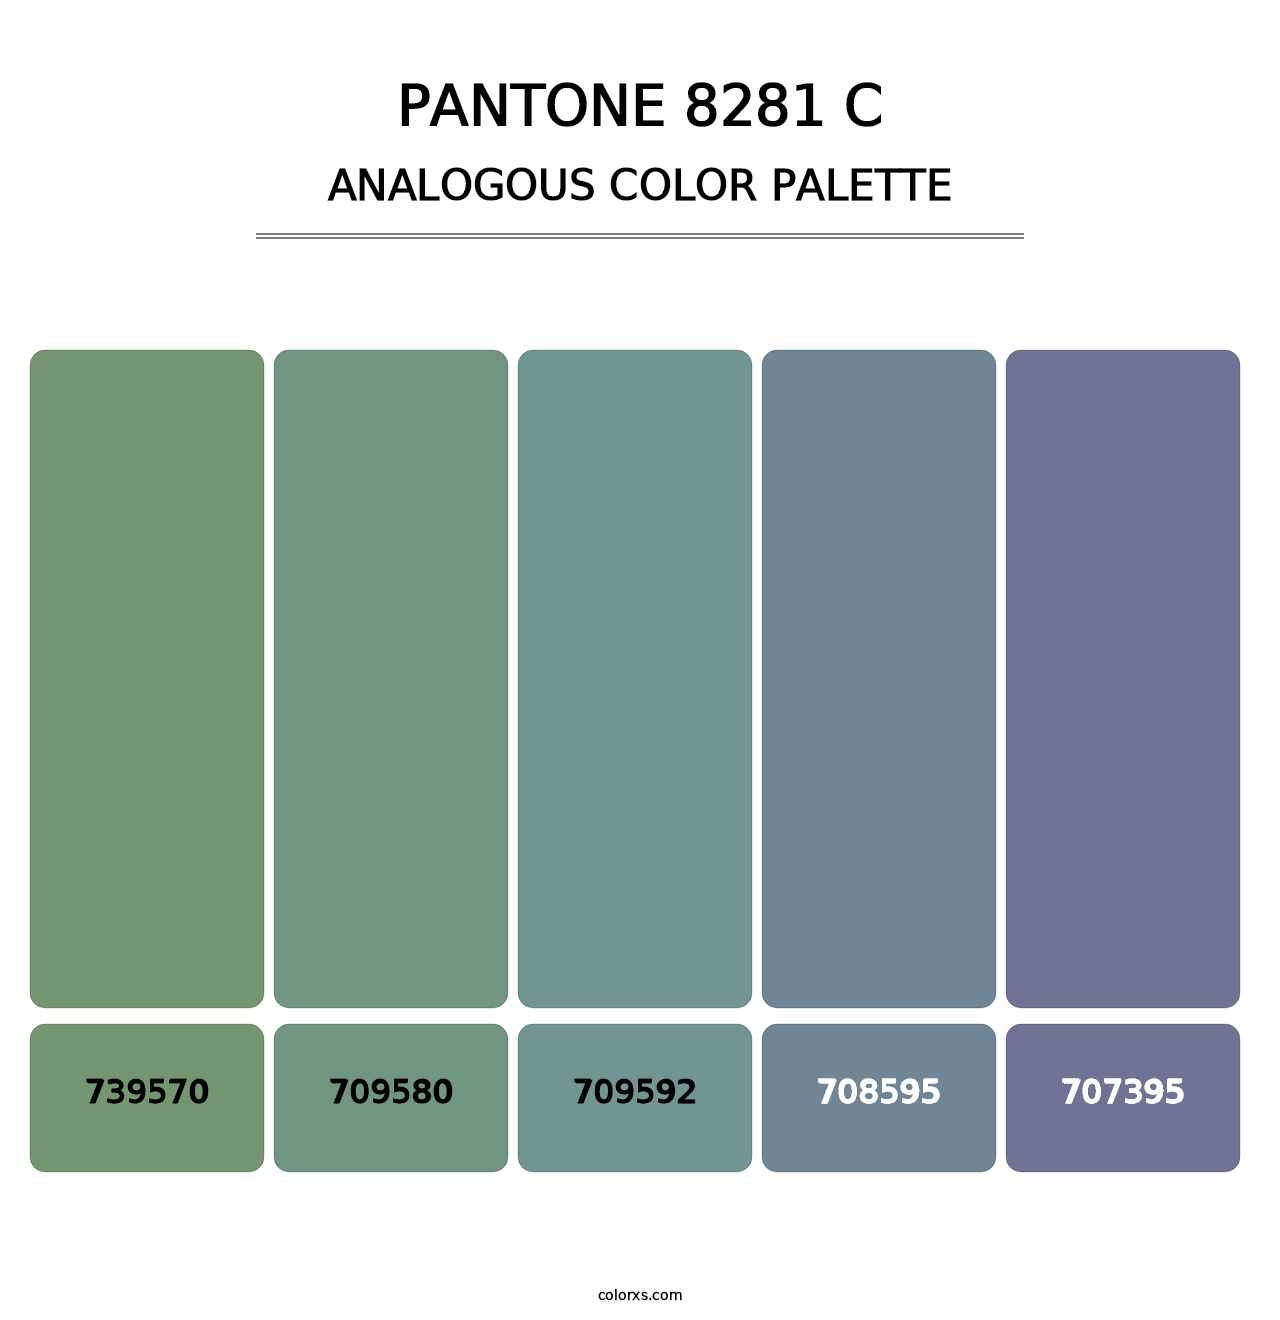 PANTONE 8281 C - Analogous Color Palette